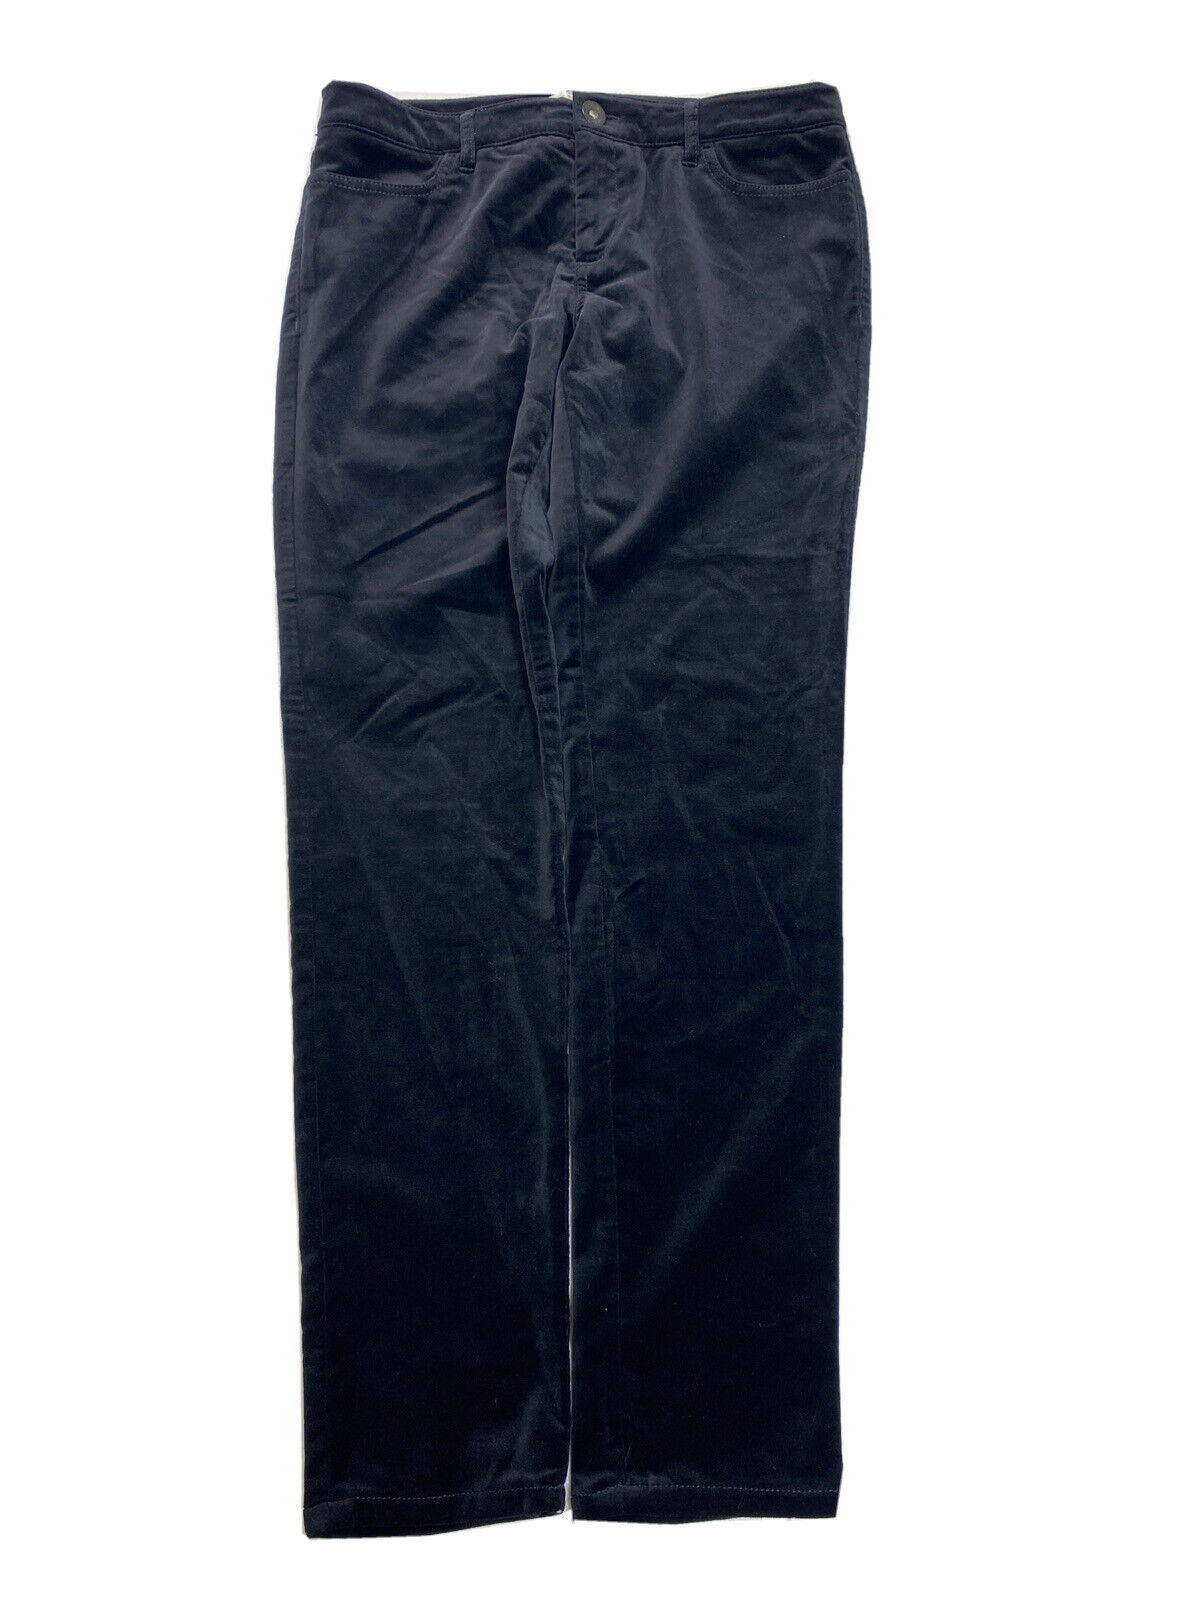 Banana Republic Women's Black Velour Velvet Slim Pants Sz 6